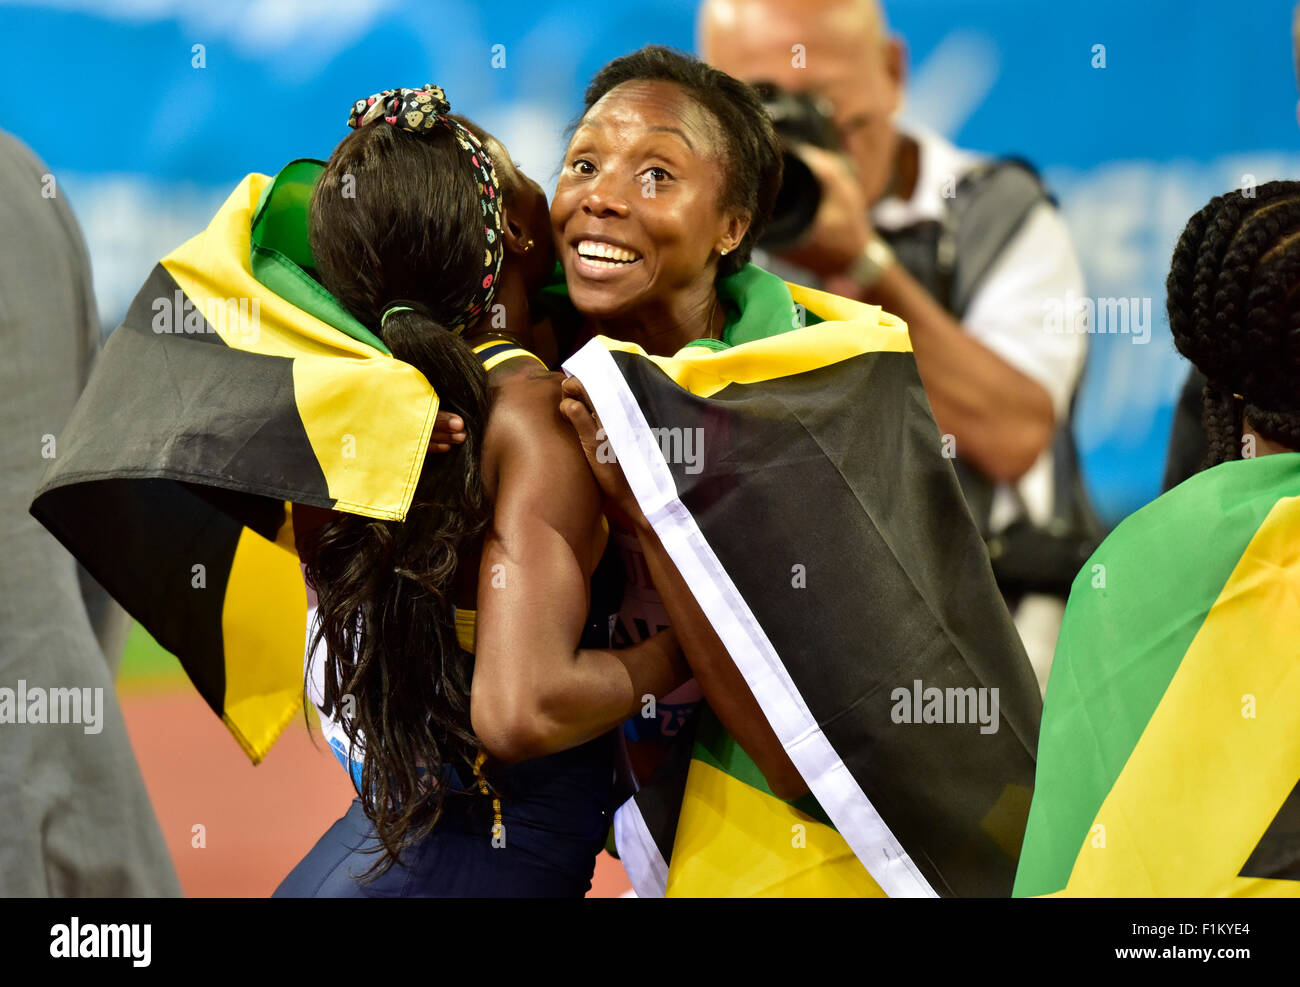 Zurich, Suisse, 06th Nov, 2015. Elaine Thompson (à gauche) est les câlins par Natasha Morrison après la victoire et nouveau compte rendu de la Jamaïque du 4x100m de l'équipe féminine de relais qui bat Team USA à l'IAAF Diamond League 2015 Réunion d'athlétisme de Zurich. Crédit : Erik Tham/Alamy Live News Banque D'Images